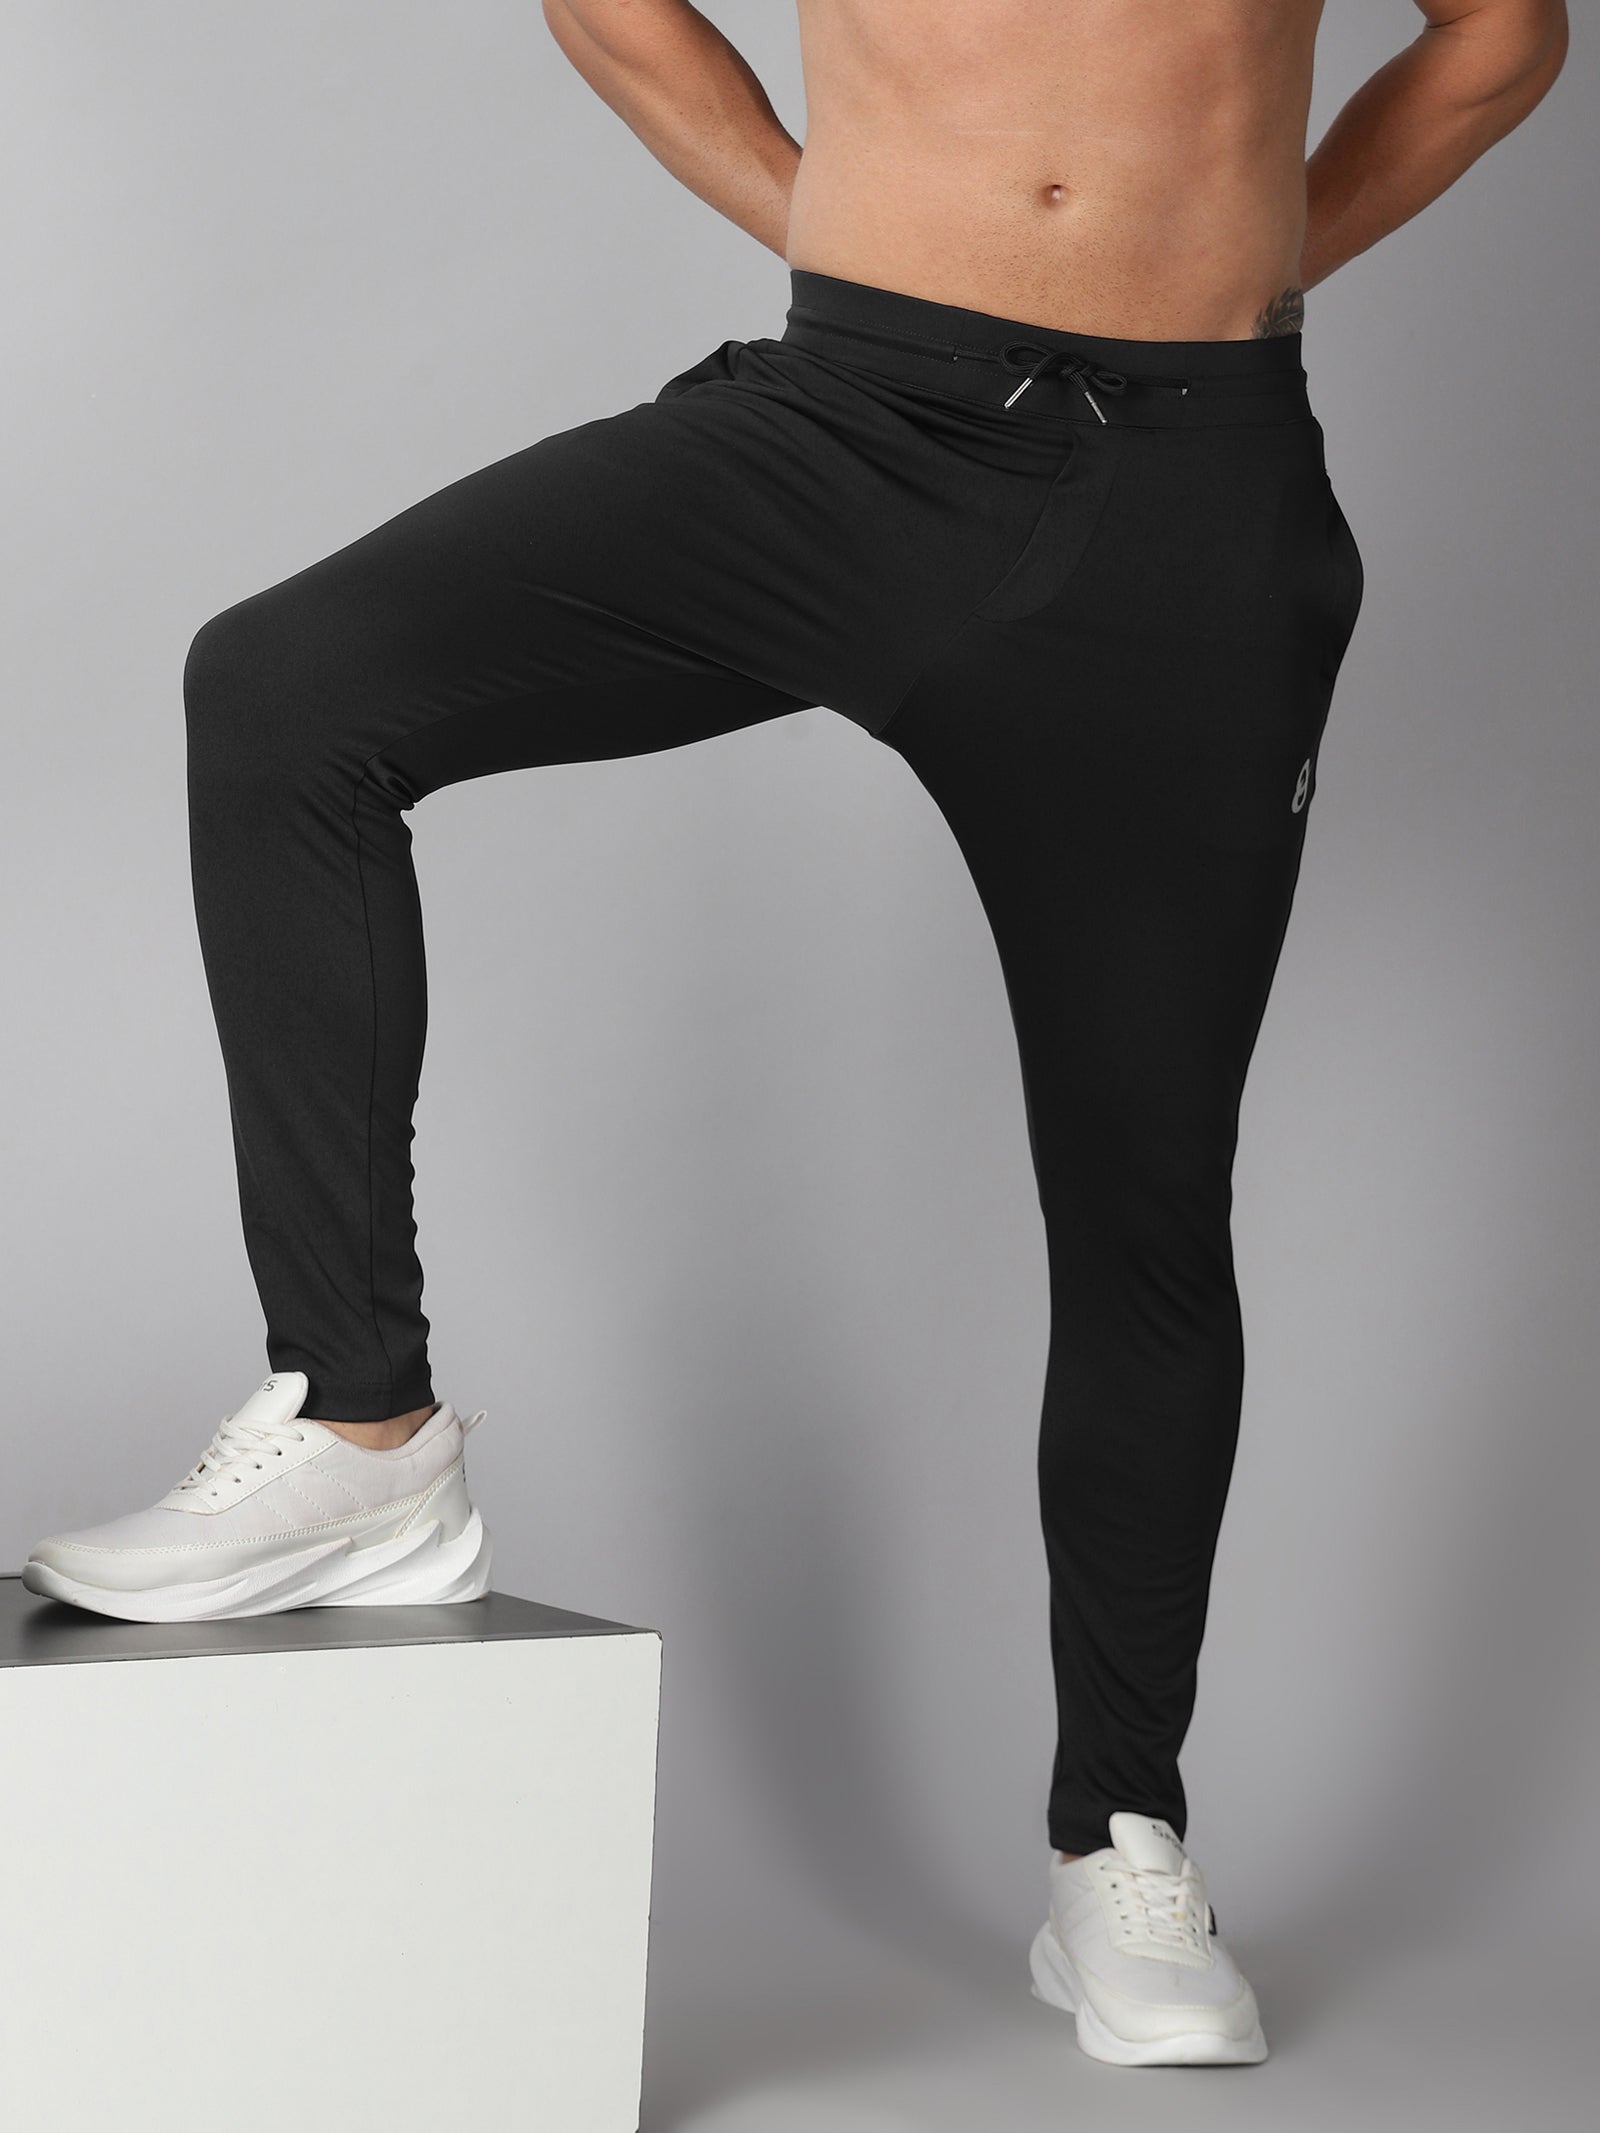 Buy Highlander Black Slim Fit Track Pants for Men Online at Rs412  Ketch